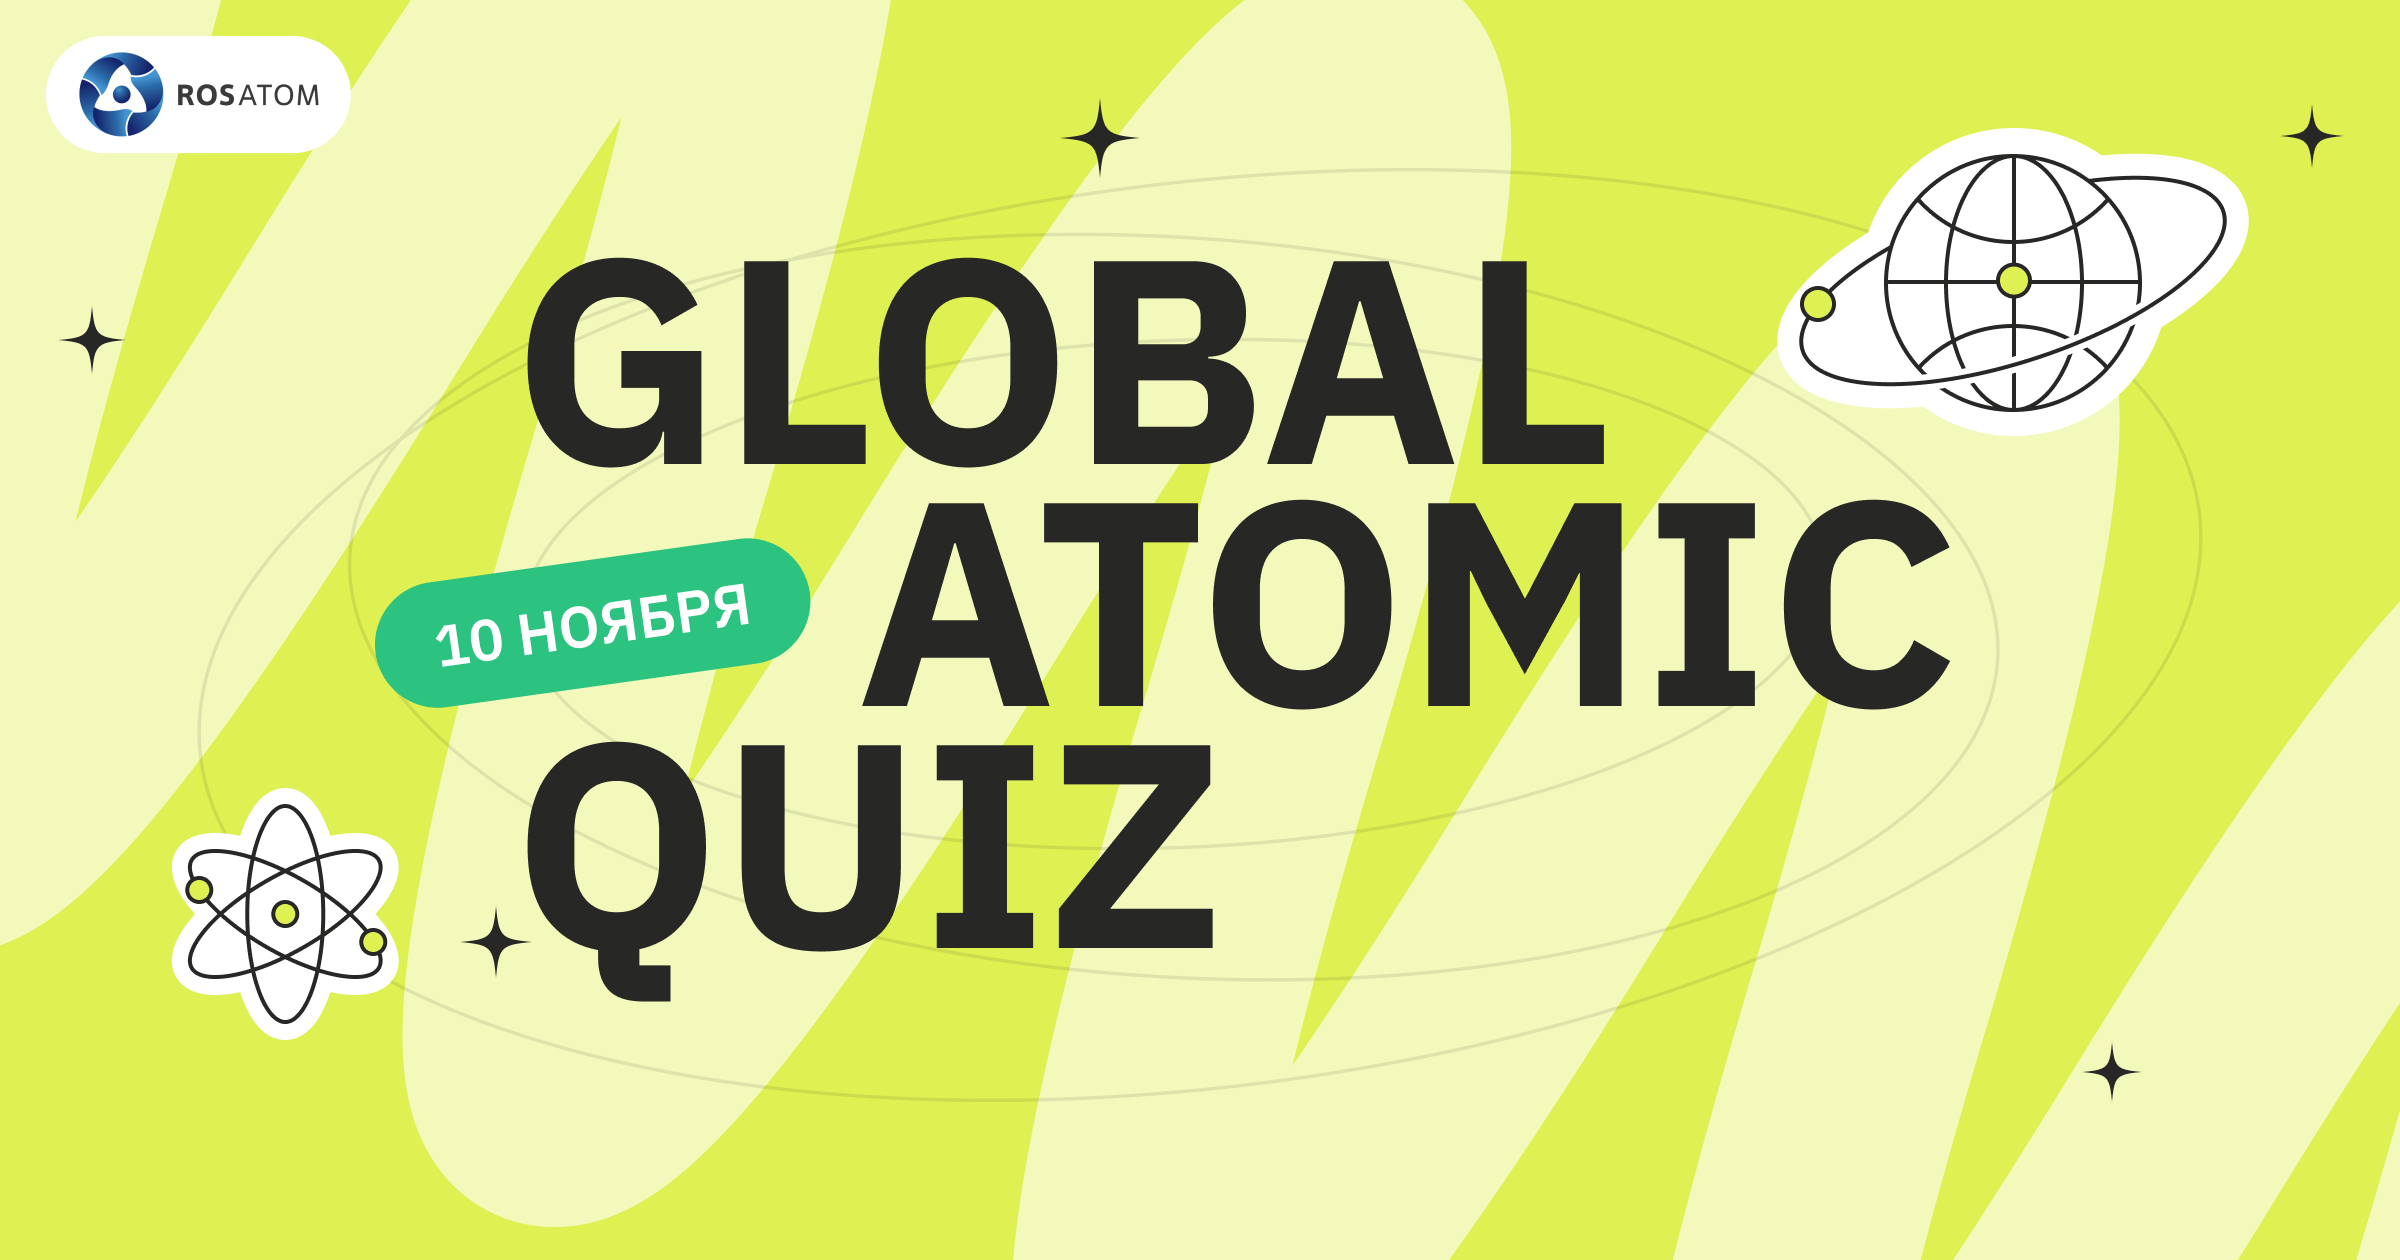 Росатом вновь проведет Global Atomic Quiz 10 ноября в честь Всемирного дня науки